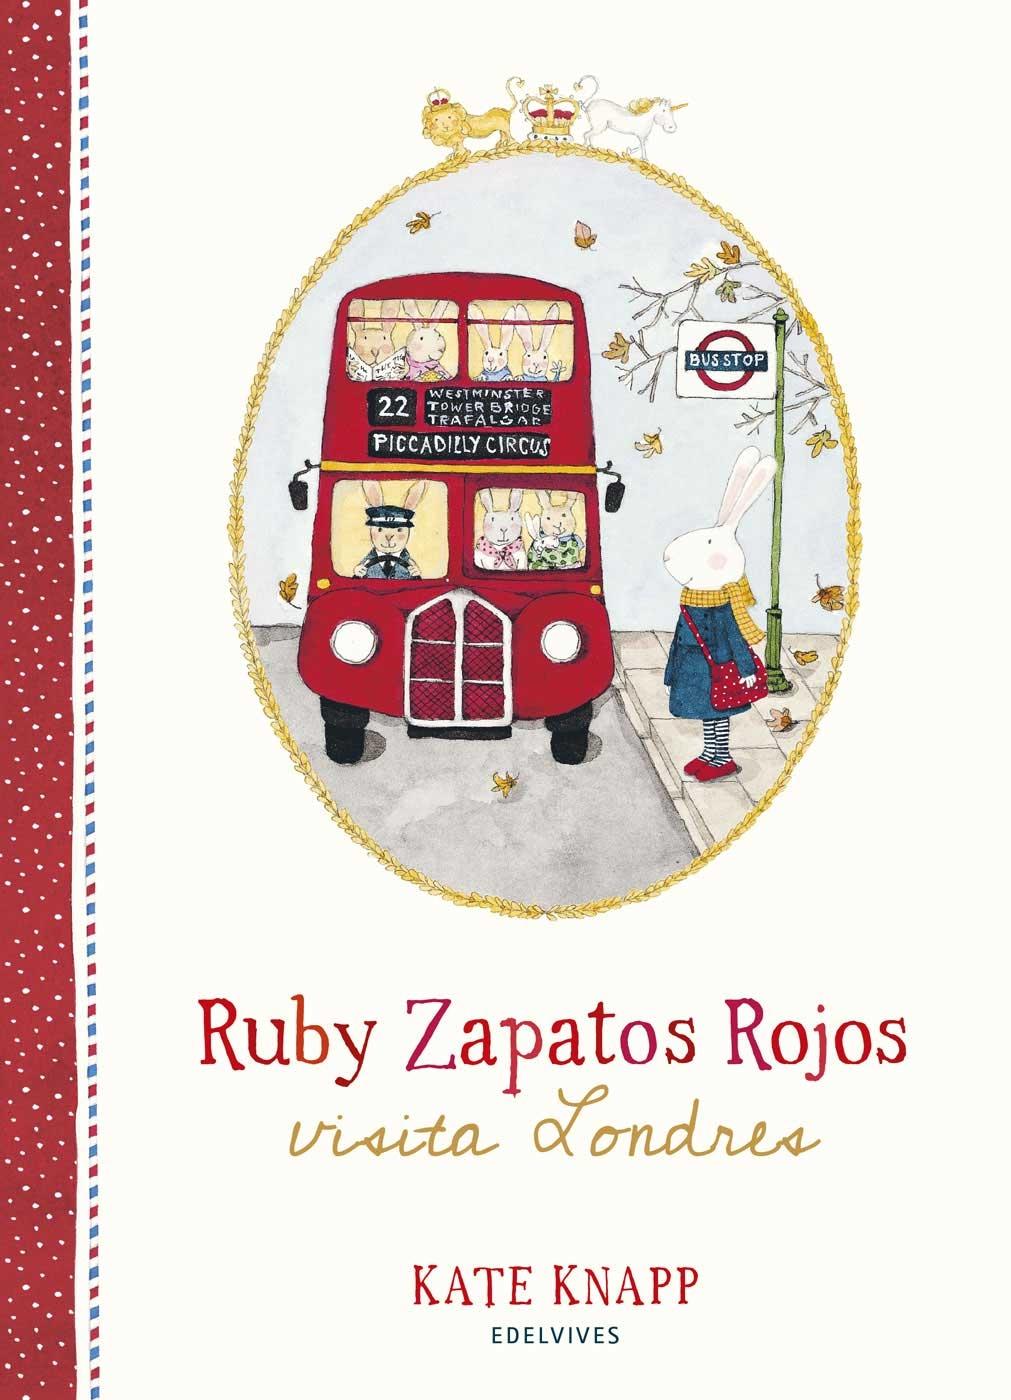 RUBY ZAPATOS ROJOS VISITA LONDRES. 